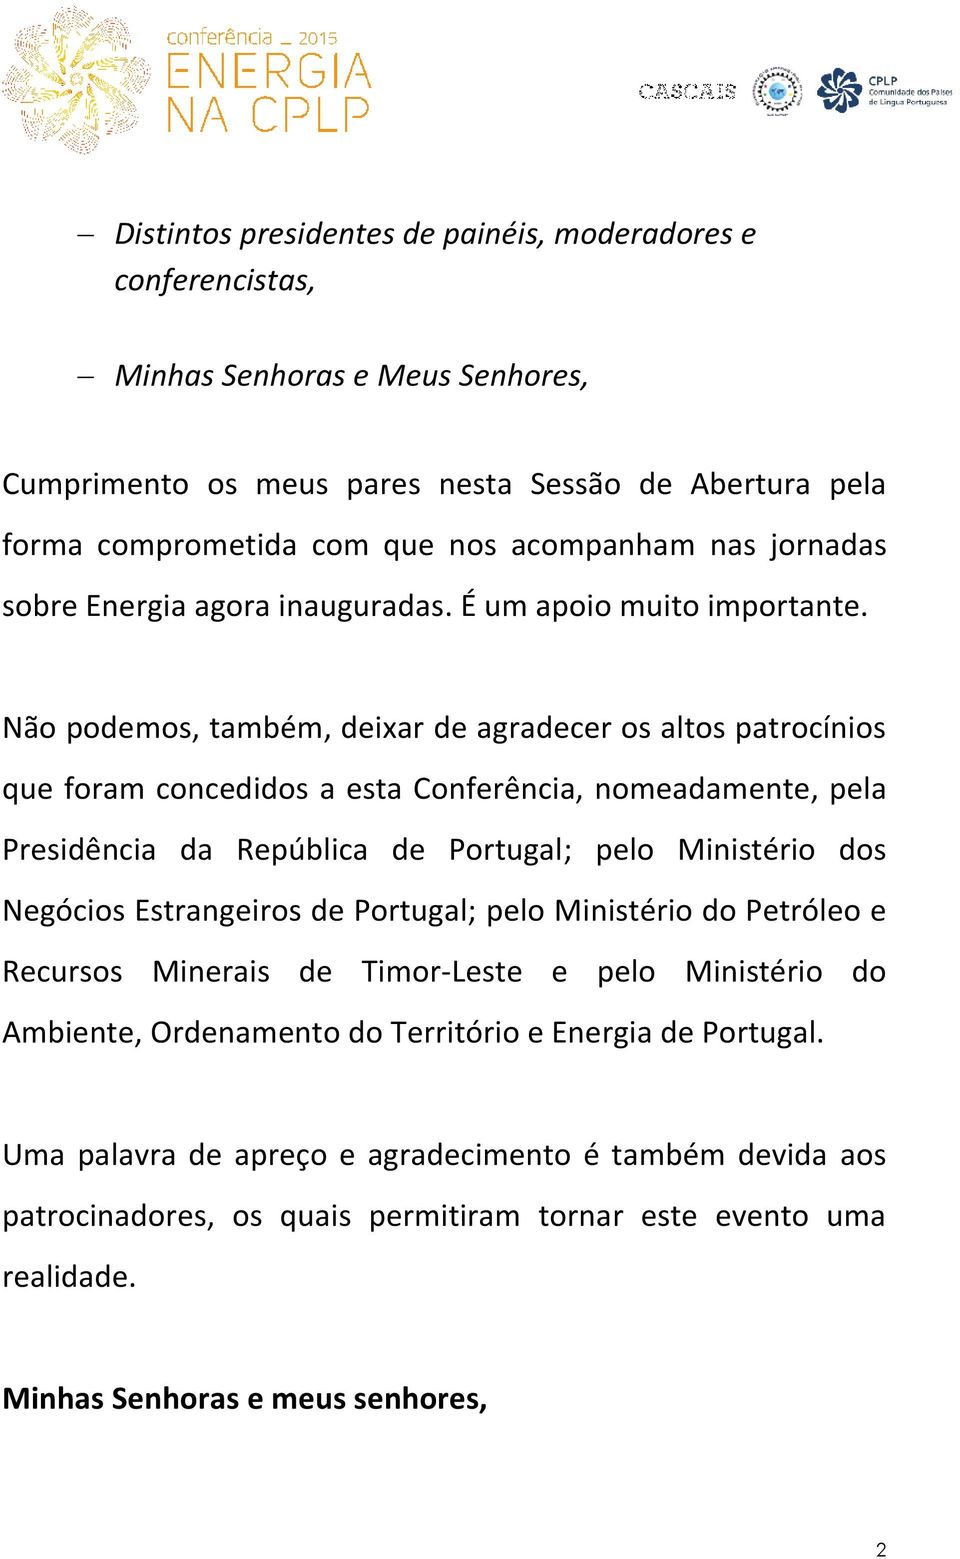 Não podemos, também, deixar de agradecer os altos patrocínios que foram concedidos a esta Conferência, nomeadamente, pela Presidência da República de Portugal; pelo Ministério dos Negócios